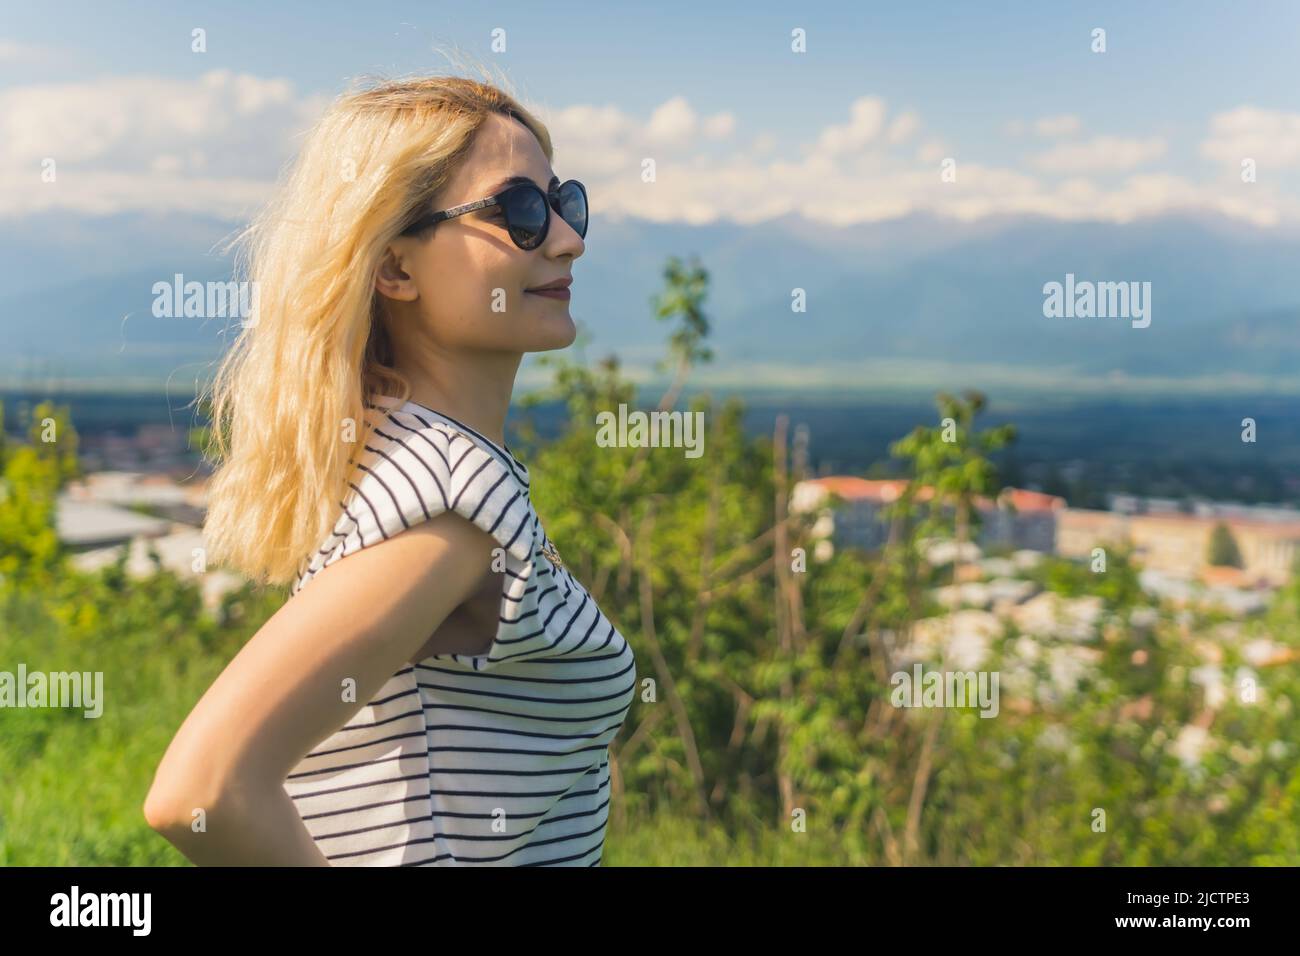 Profilaufnahme eines blonden kaukasischen Mädchens, das mit einem schönen Blick auf die Berge genießt und weit weg schaut. Mittlere Nahaufnahme im Freien. Hochwertige Fotos Stockfoto